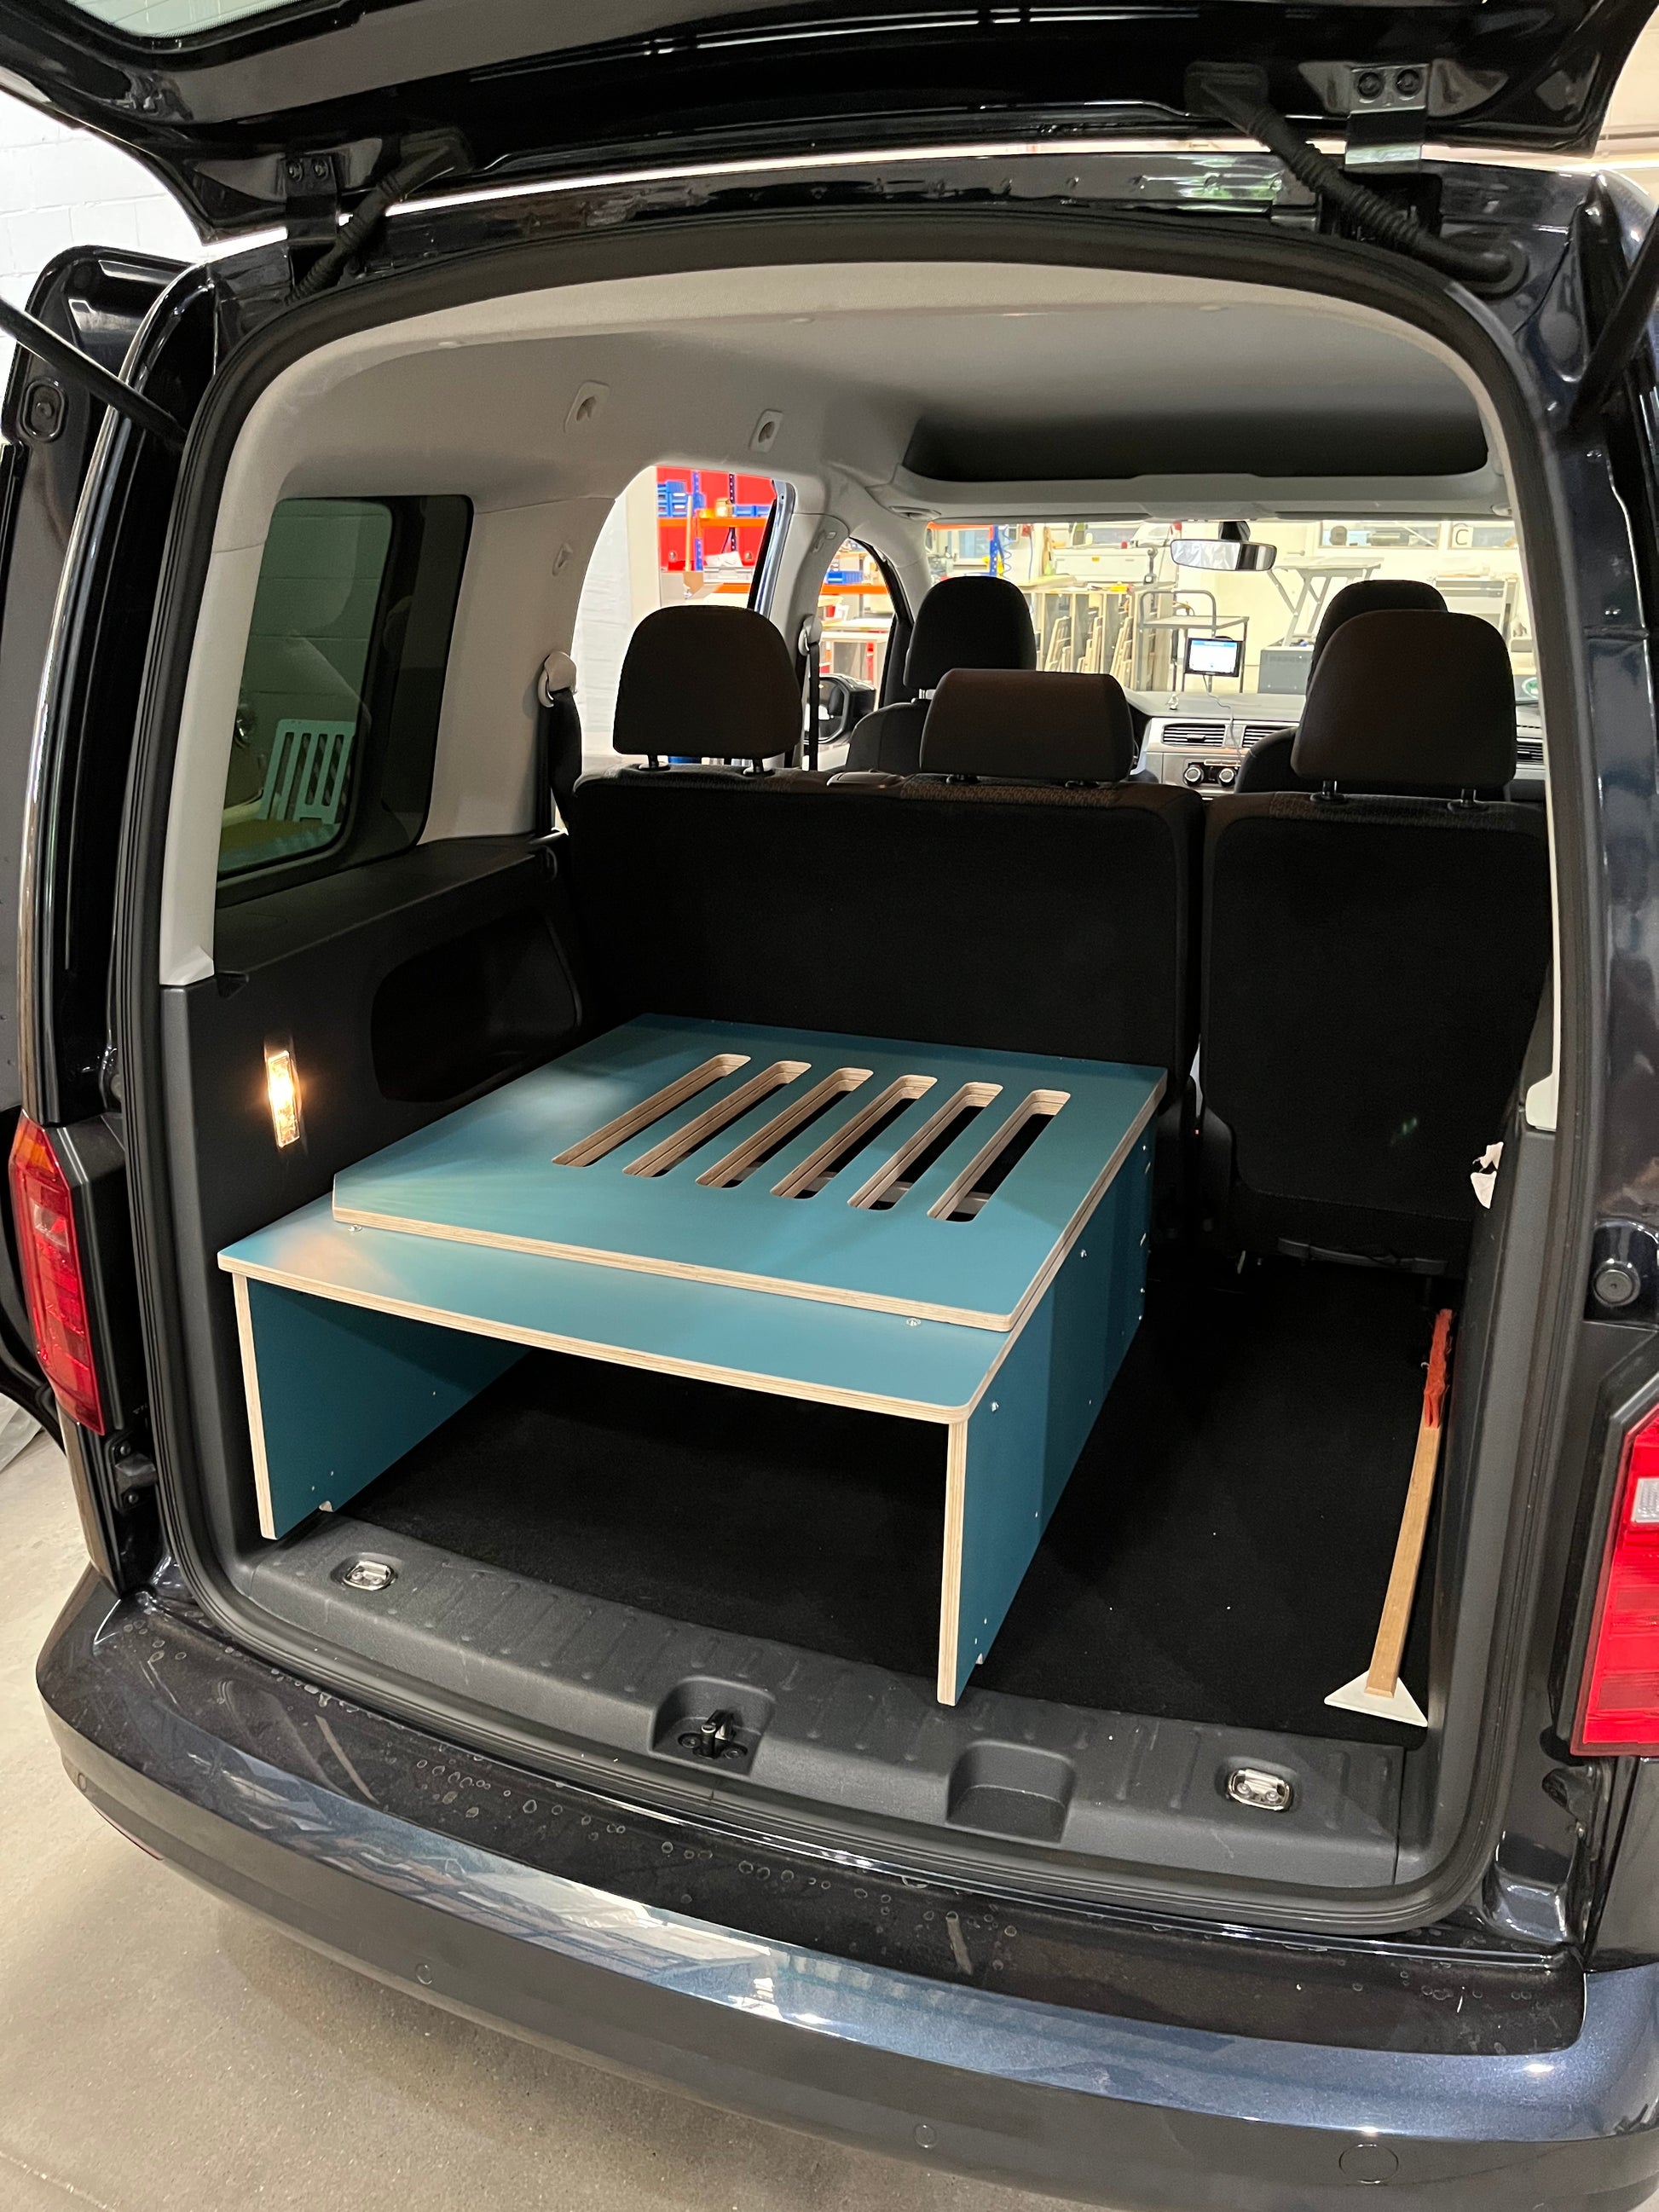 Ausbau- und Schlafsystem inkl. Matratze für VW Caddy und ähnliche Fahrzeuge  - Go Outside – Ihr Campingspezialist (Küchen, Ausbau, Zubehör)